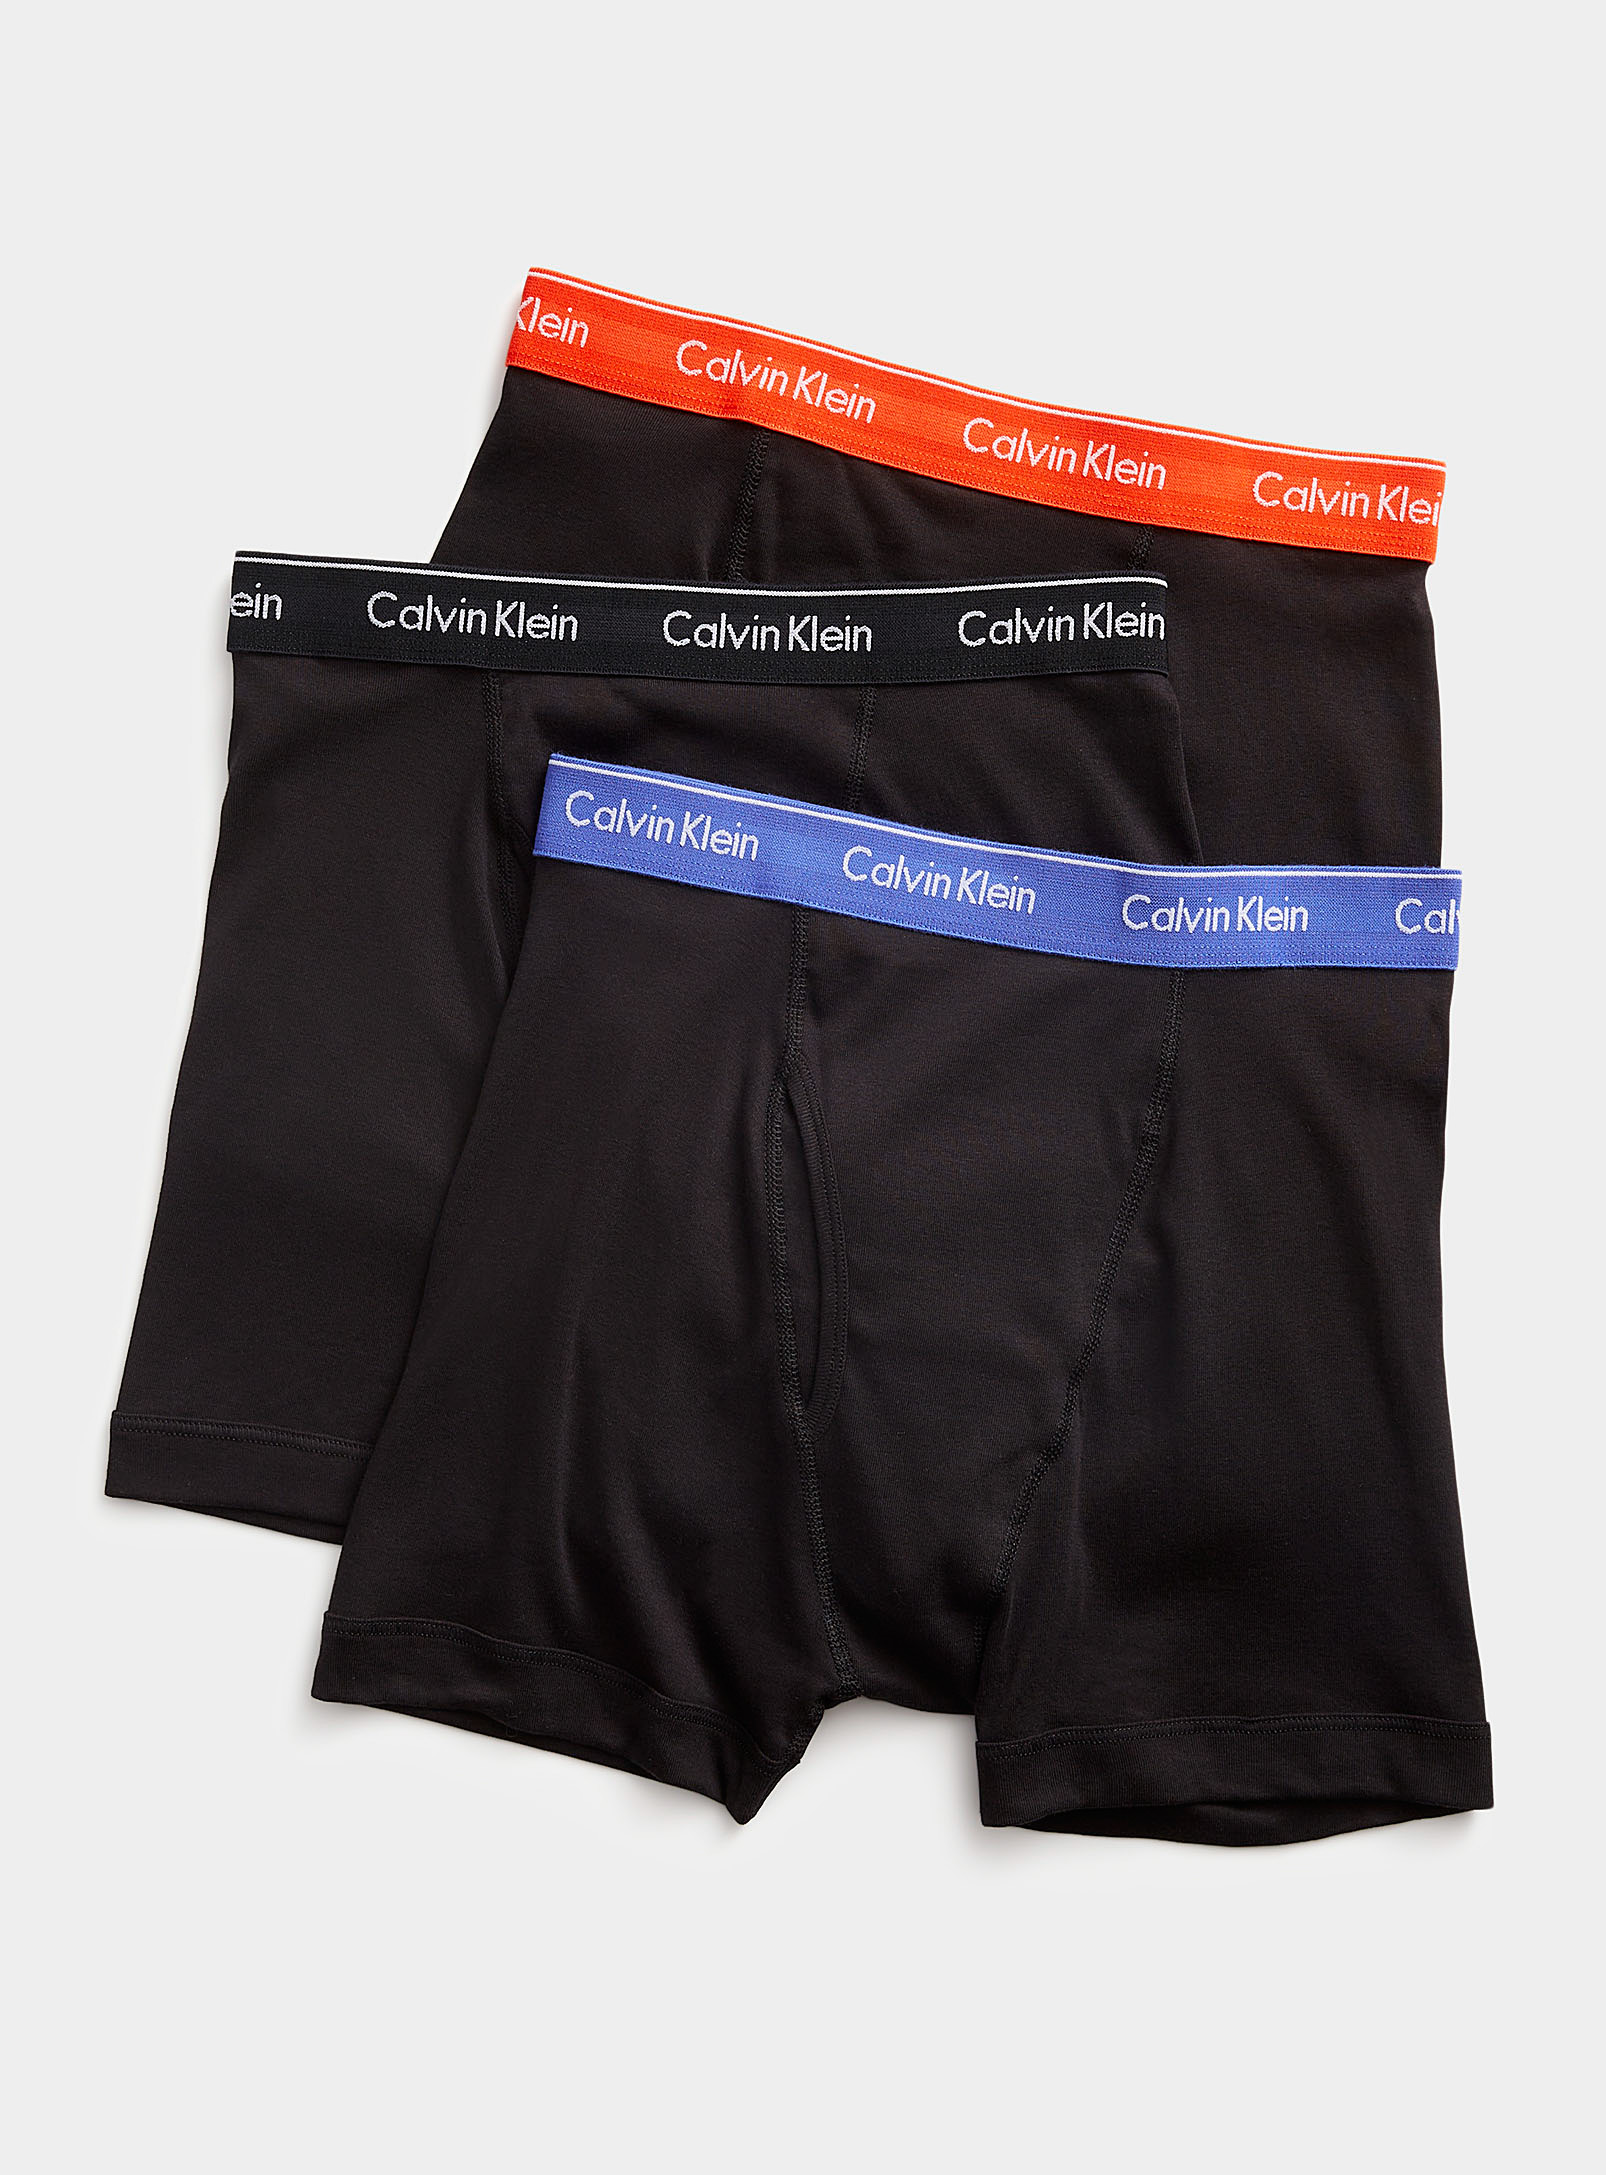 CCalvin Klein - Men's Pure cotton black boxer briefs 3-pack